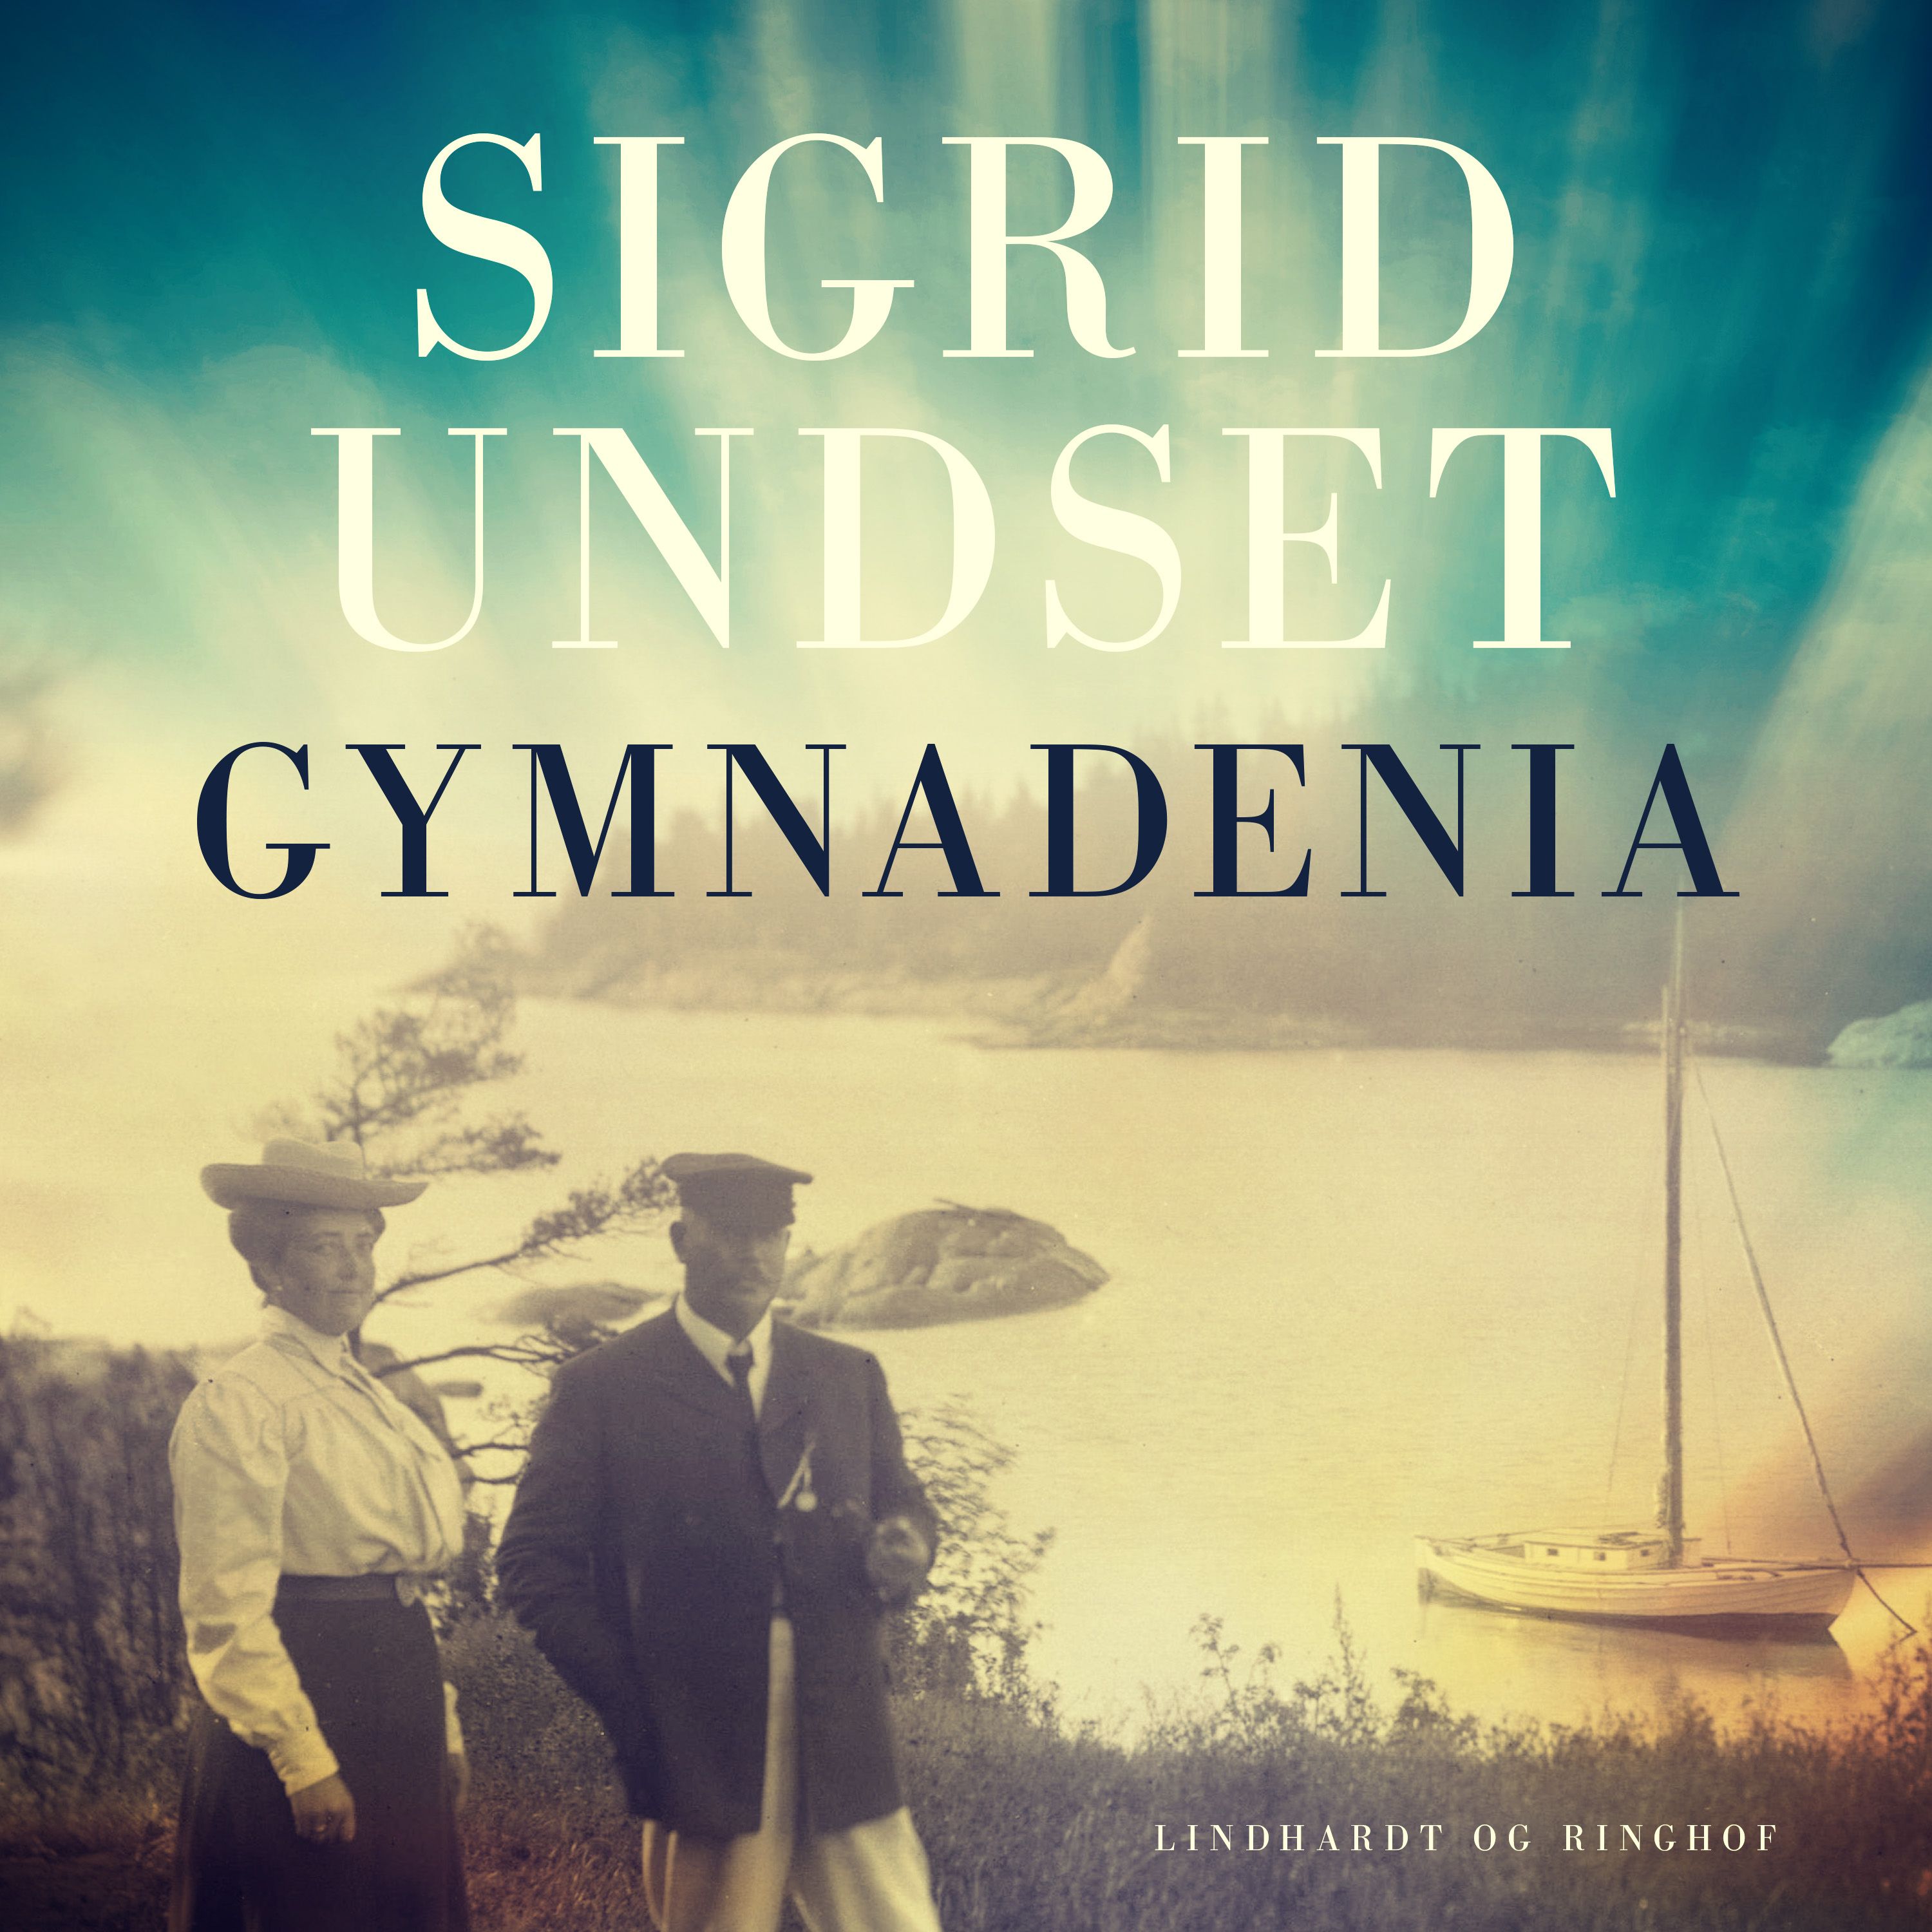 Gymnadenia, ljudbok av Sigrid Undset